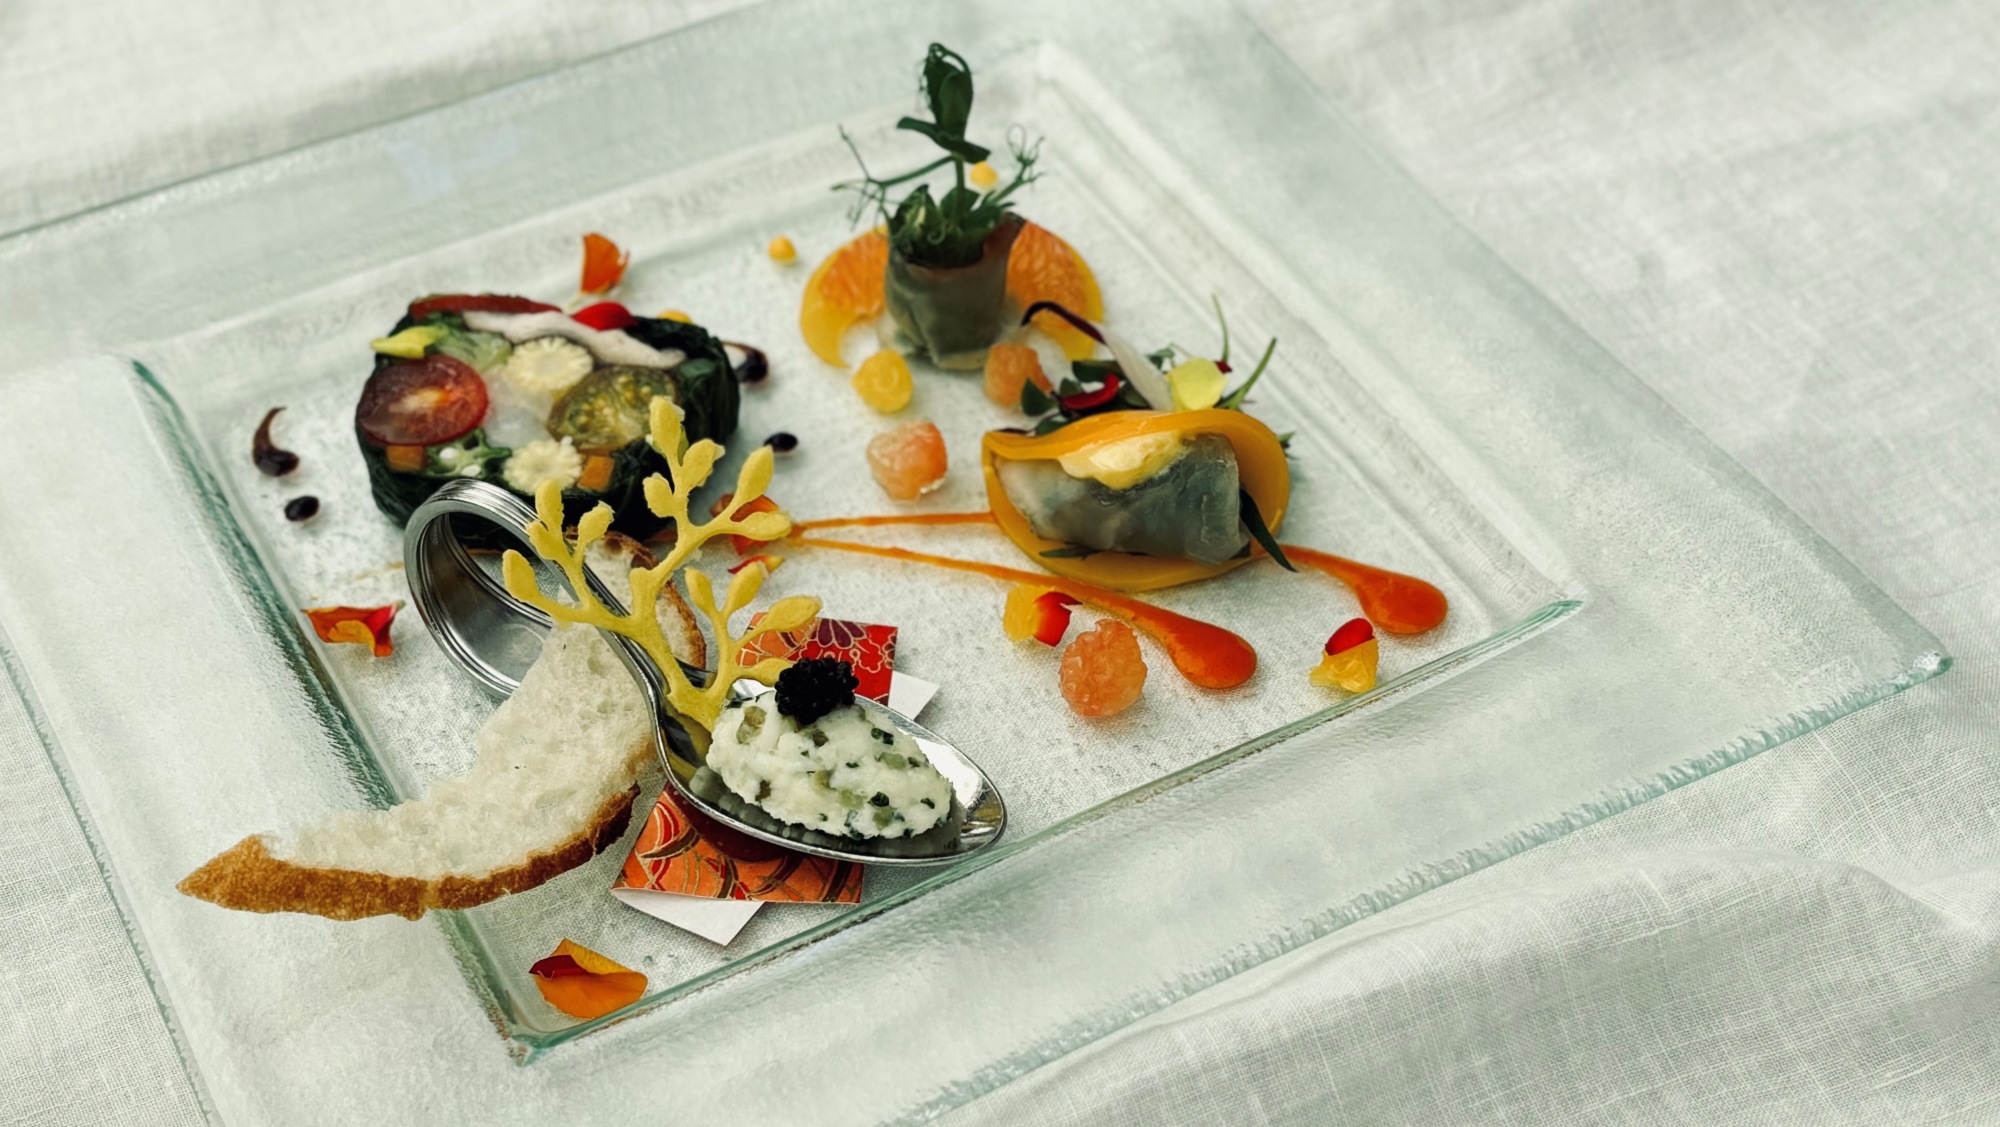 「真鯛のデグリネゾン」は、真鯛を3種の調理法で仕上げた料理長渾身の一皿。鮮やかな見た目と、芳醇な香りをお楽しみいただけます。（※イメージ）